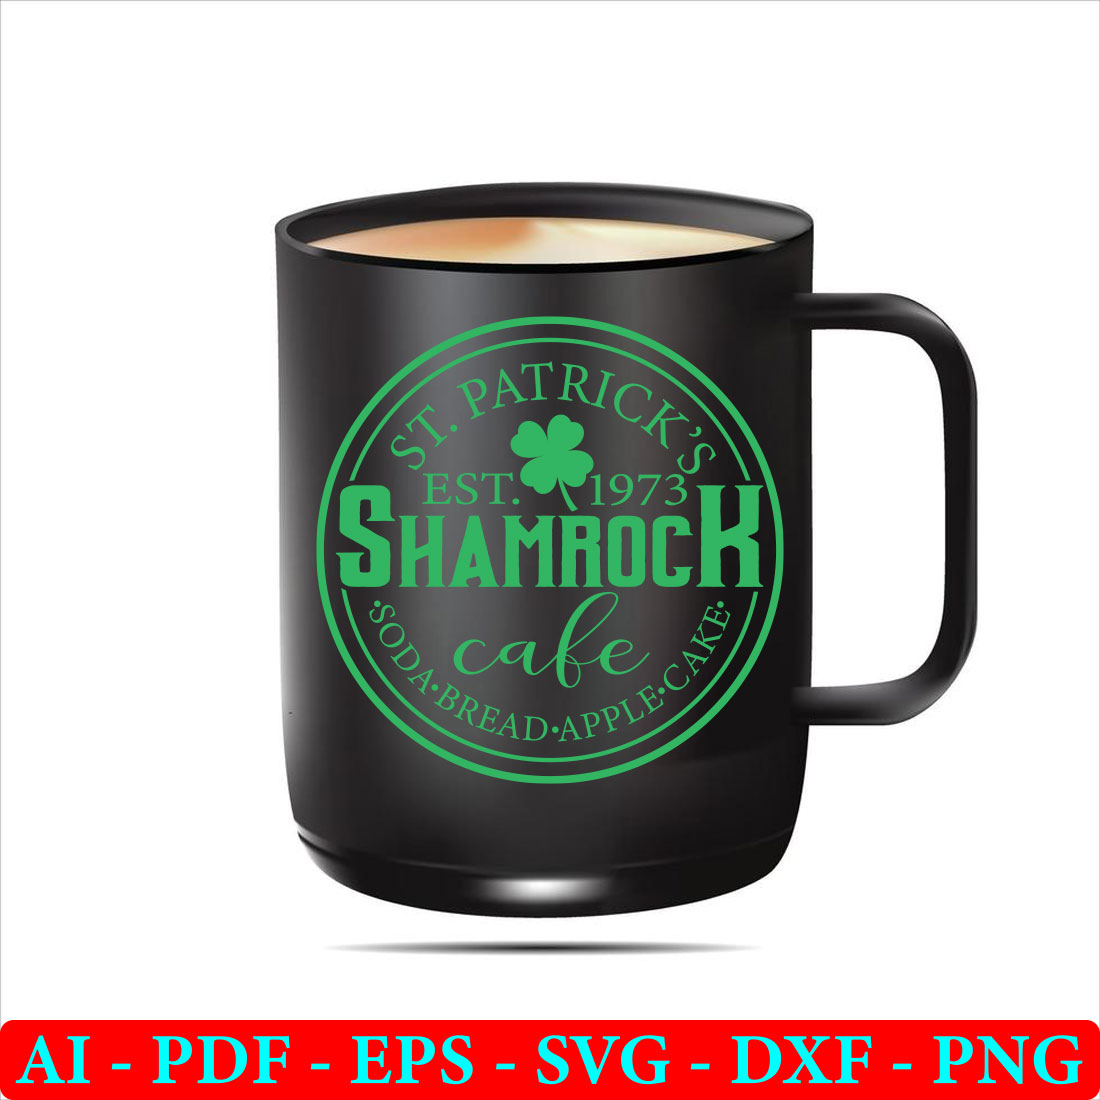 Black coffee mug with a shamrock on it.